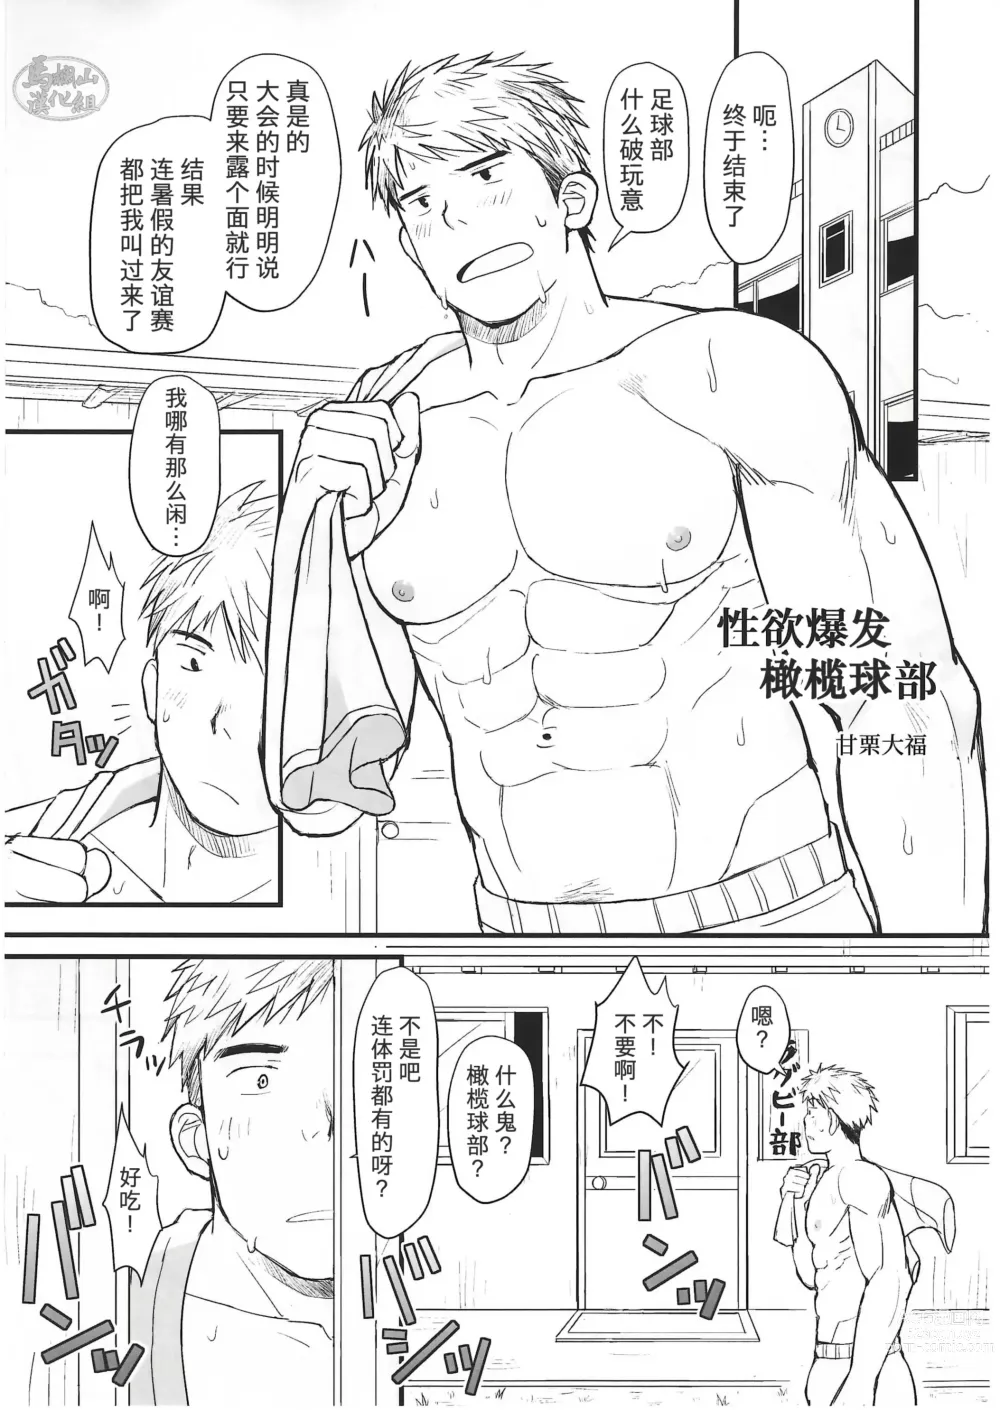 Page 16 of manga CHOGOKIN-003